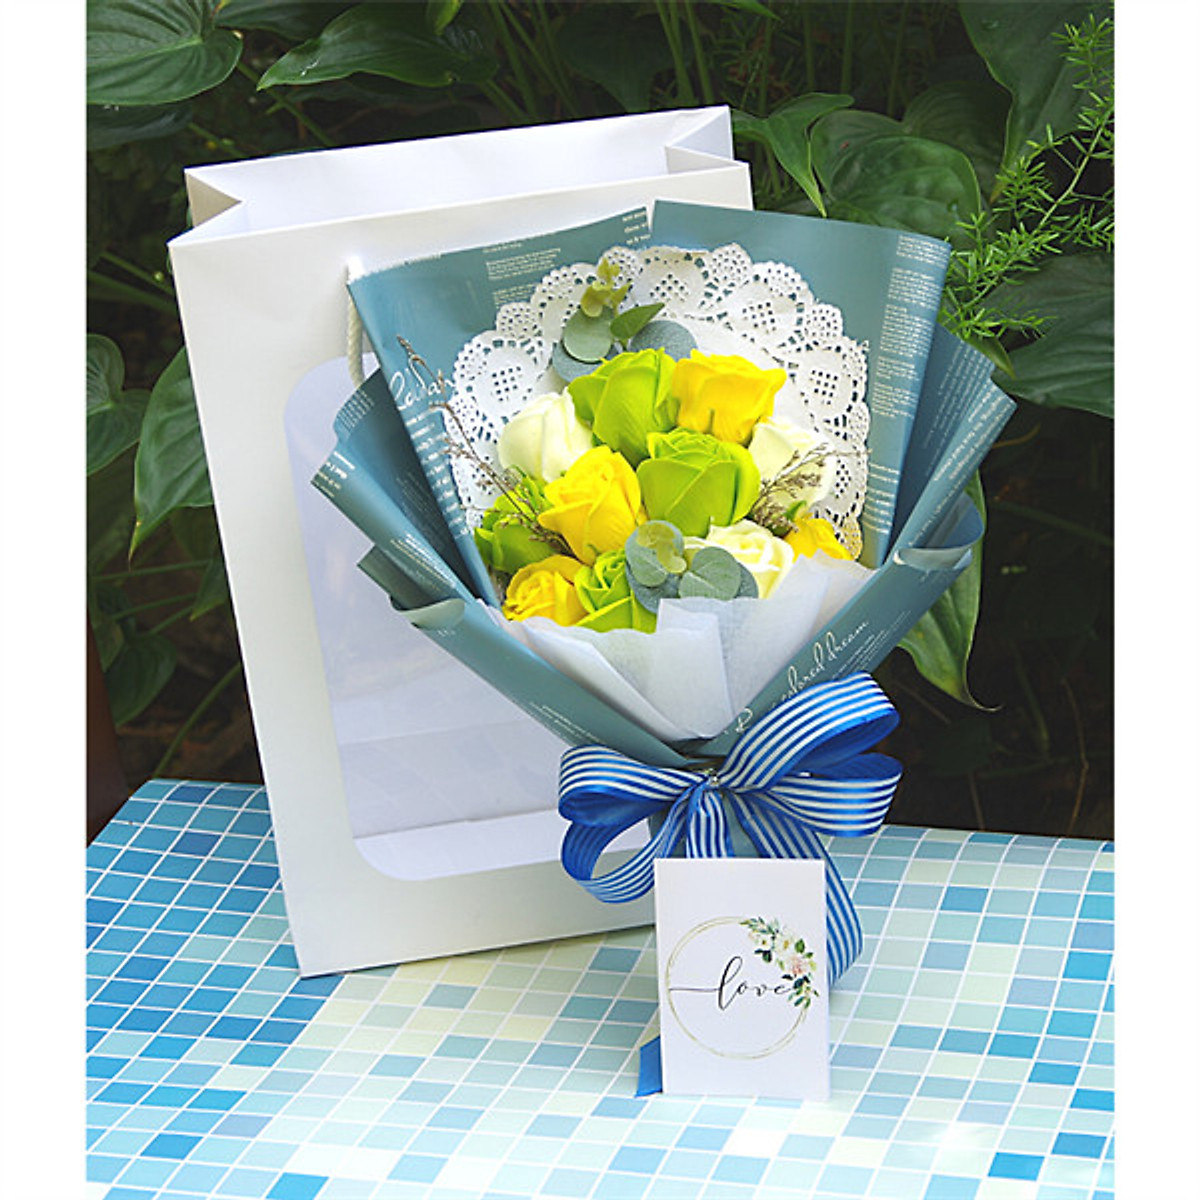 Hôm nay bạn đang tìm kiếm món quà đặc biệt cho người thân của mình? Hãy xem những thiệp bó hoa của chúng tôi, chắc chắn sẽ khiến bạn ấn tượng với sự độc đáo và tinh tế. Với các loại hoa đa dạng, các bó hoa của chúng tôi sẽ mang đến niềm vui và hạnh phúc cho người nhận.